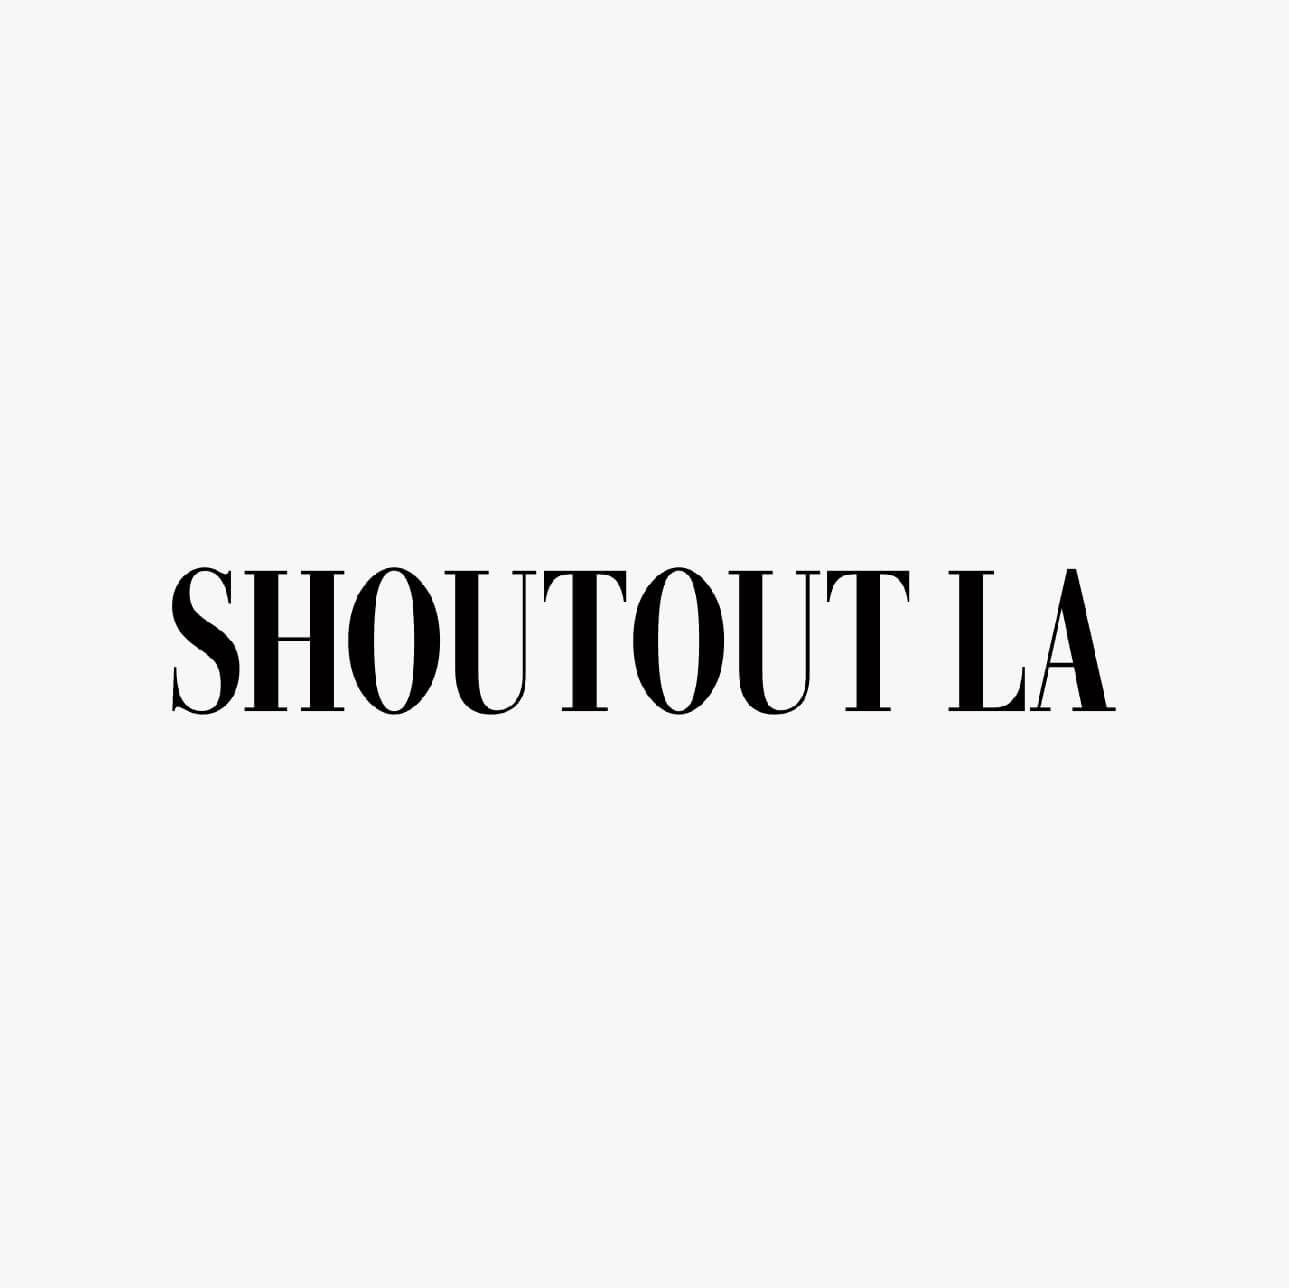 Press_Shoutout_LA_1